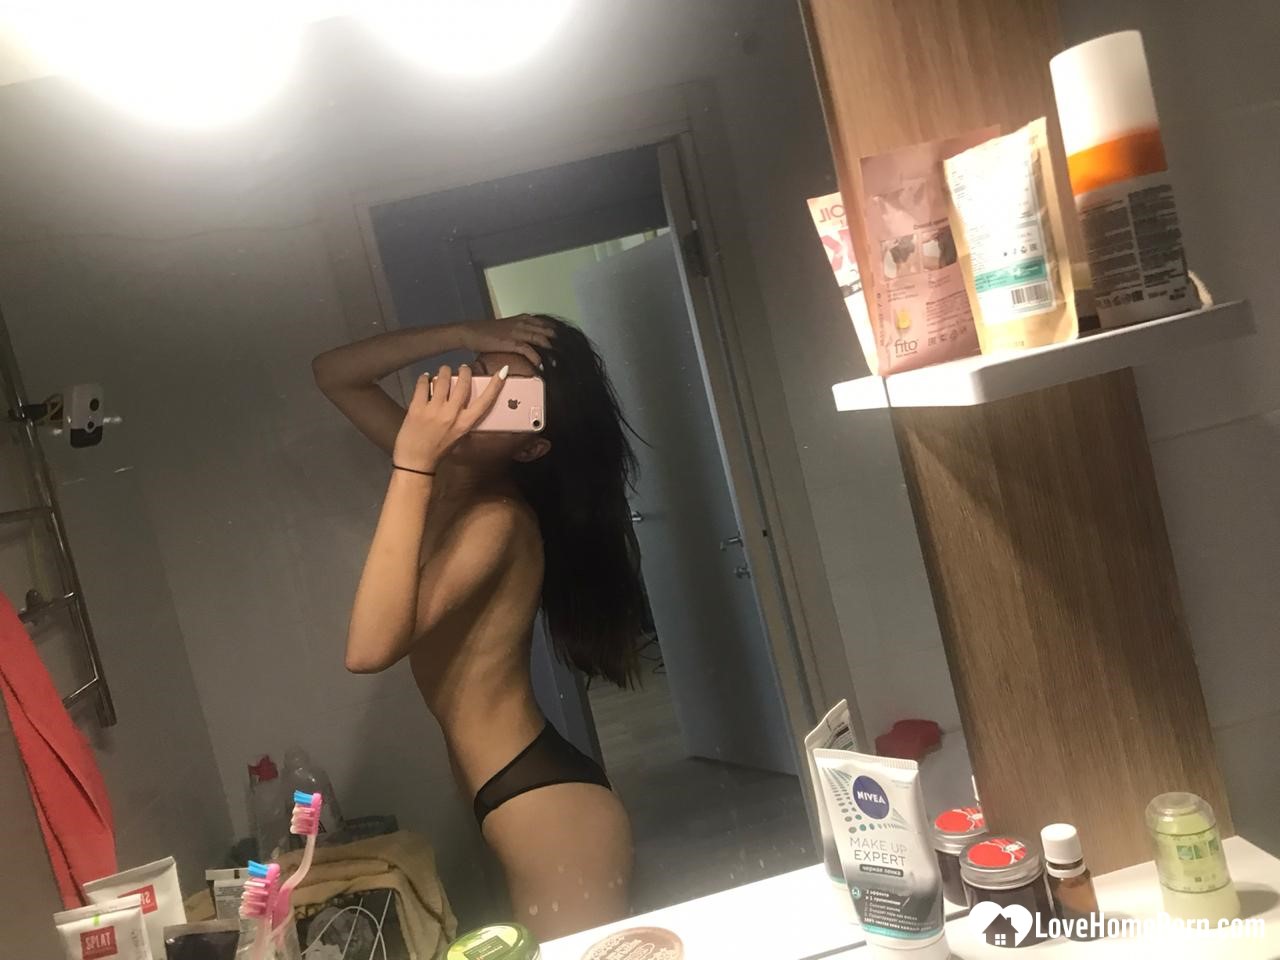 Hot schoolgirl reveals her tits in the mirror